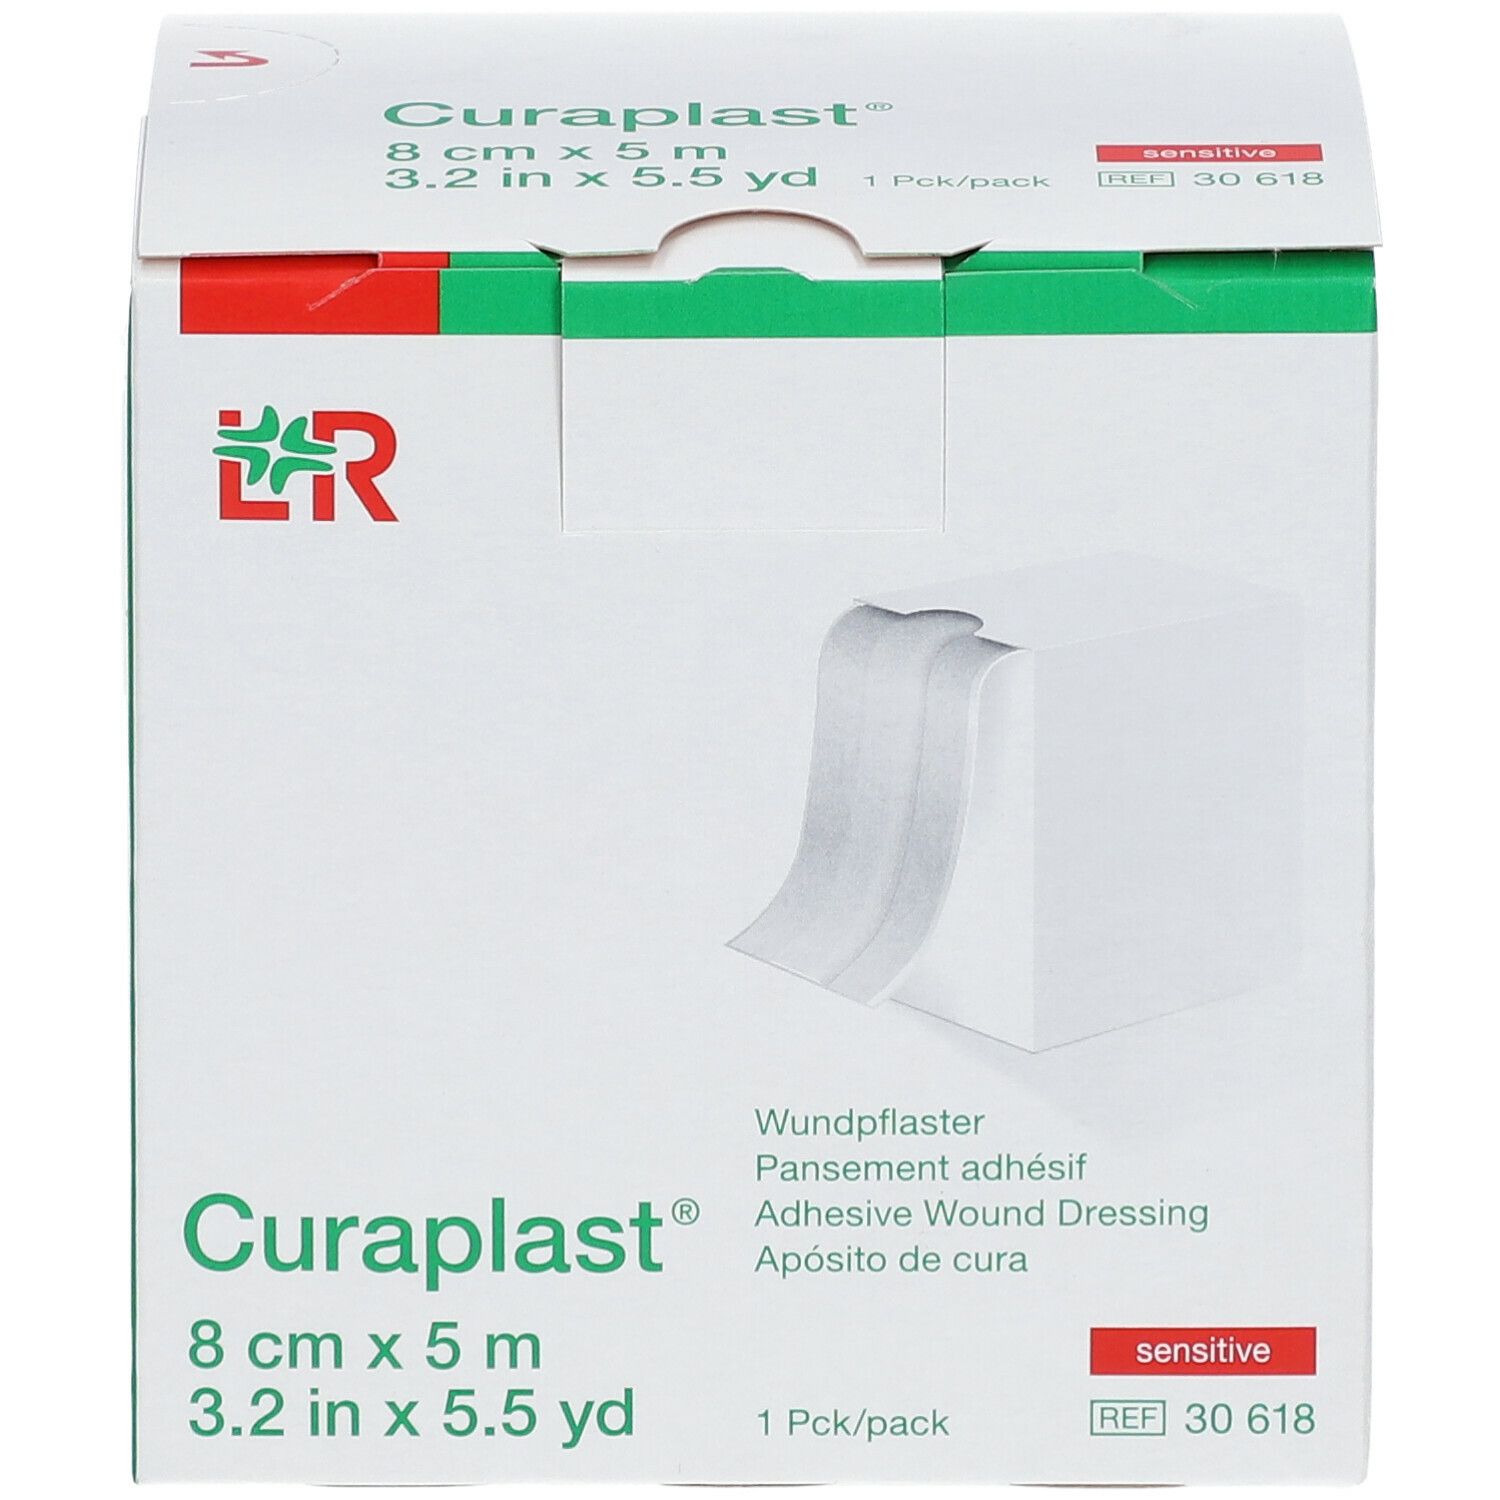 Curaplast® sensitiv Wundschnellverband 8 cm x 5 m